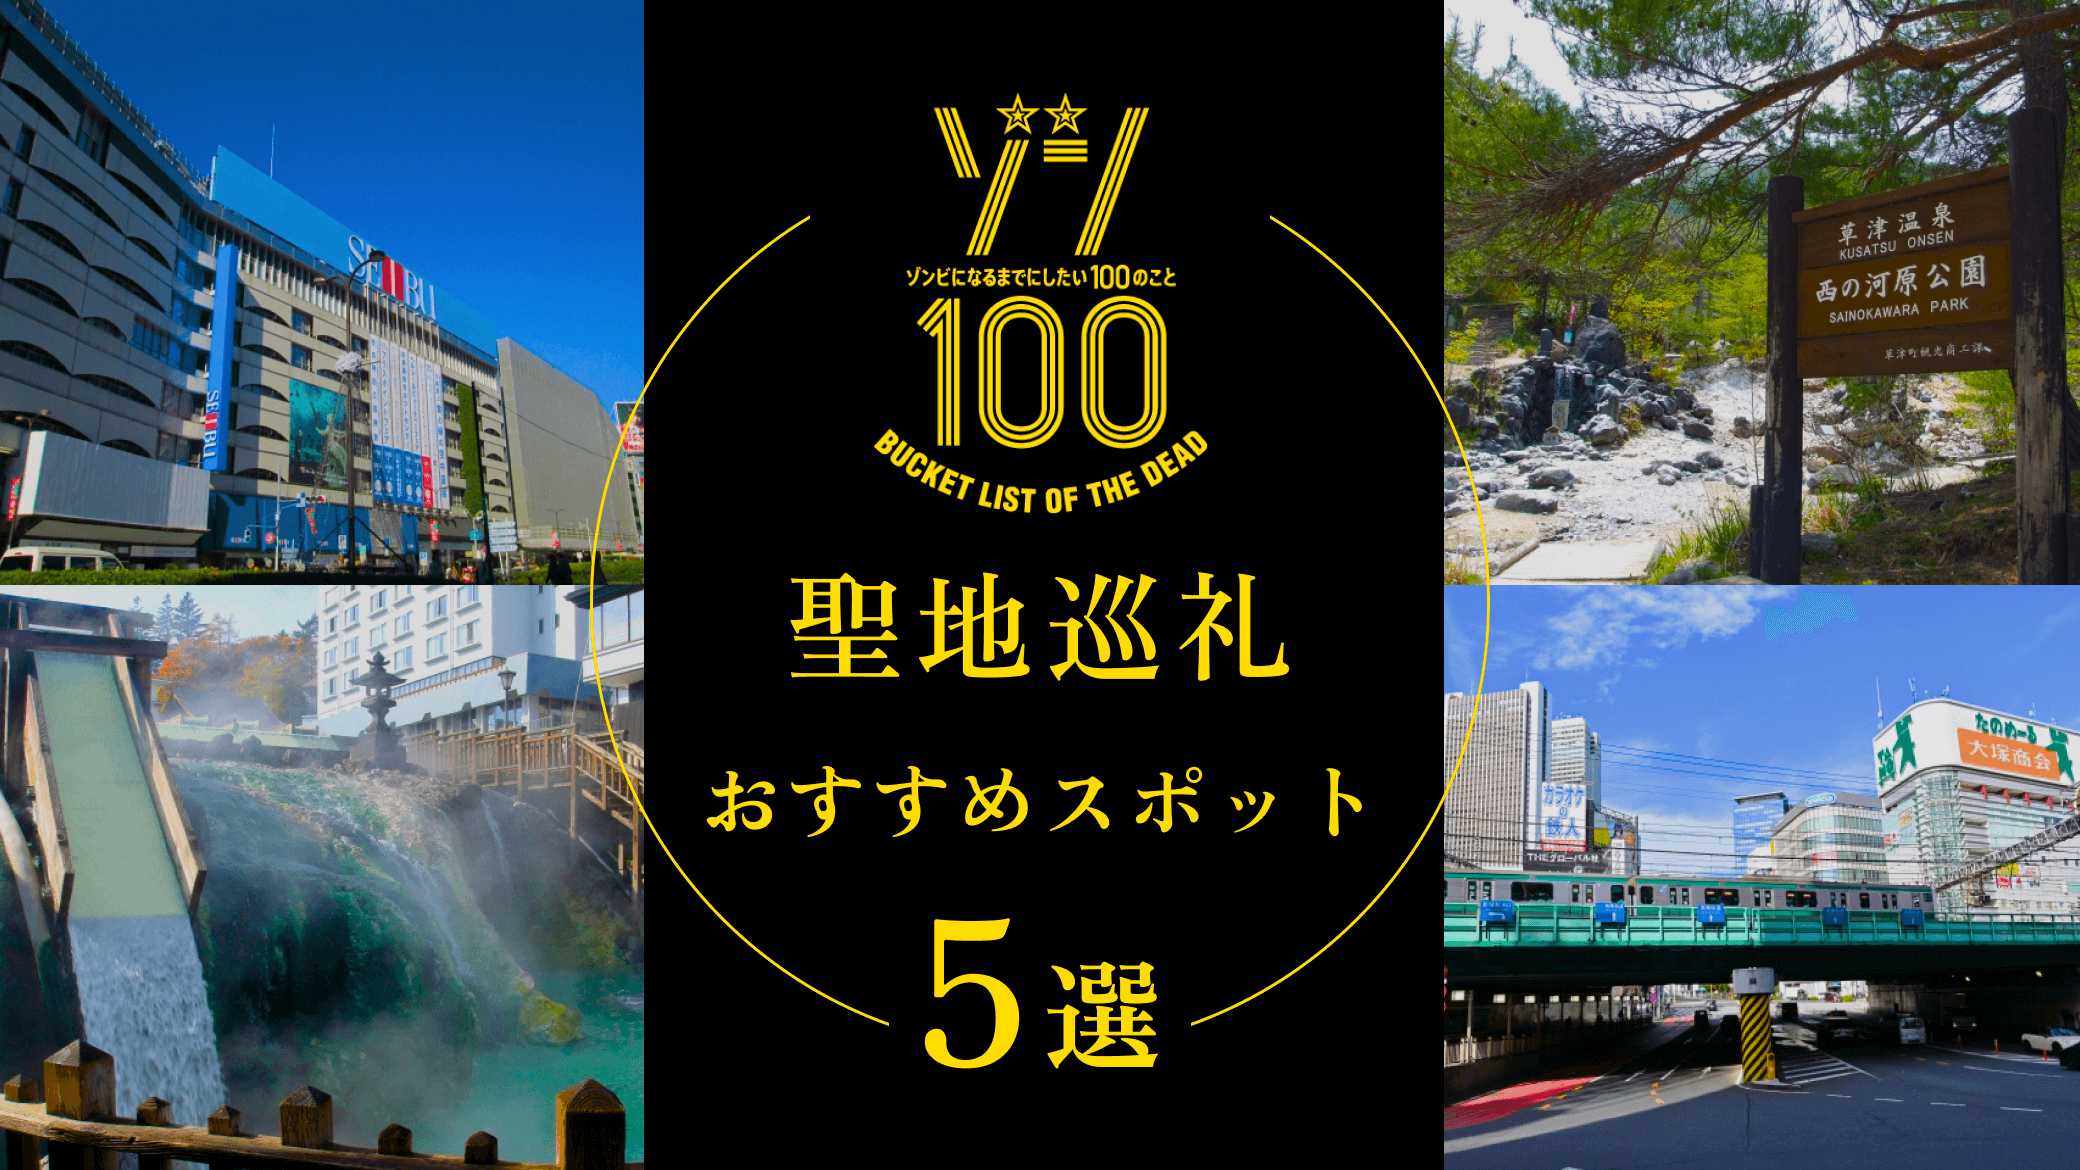 ゾンビになるまでにしたい100のことの聖地巡礼スポット5選！東京や群馬を中心に紹介